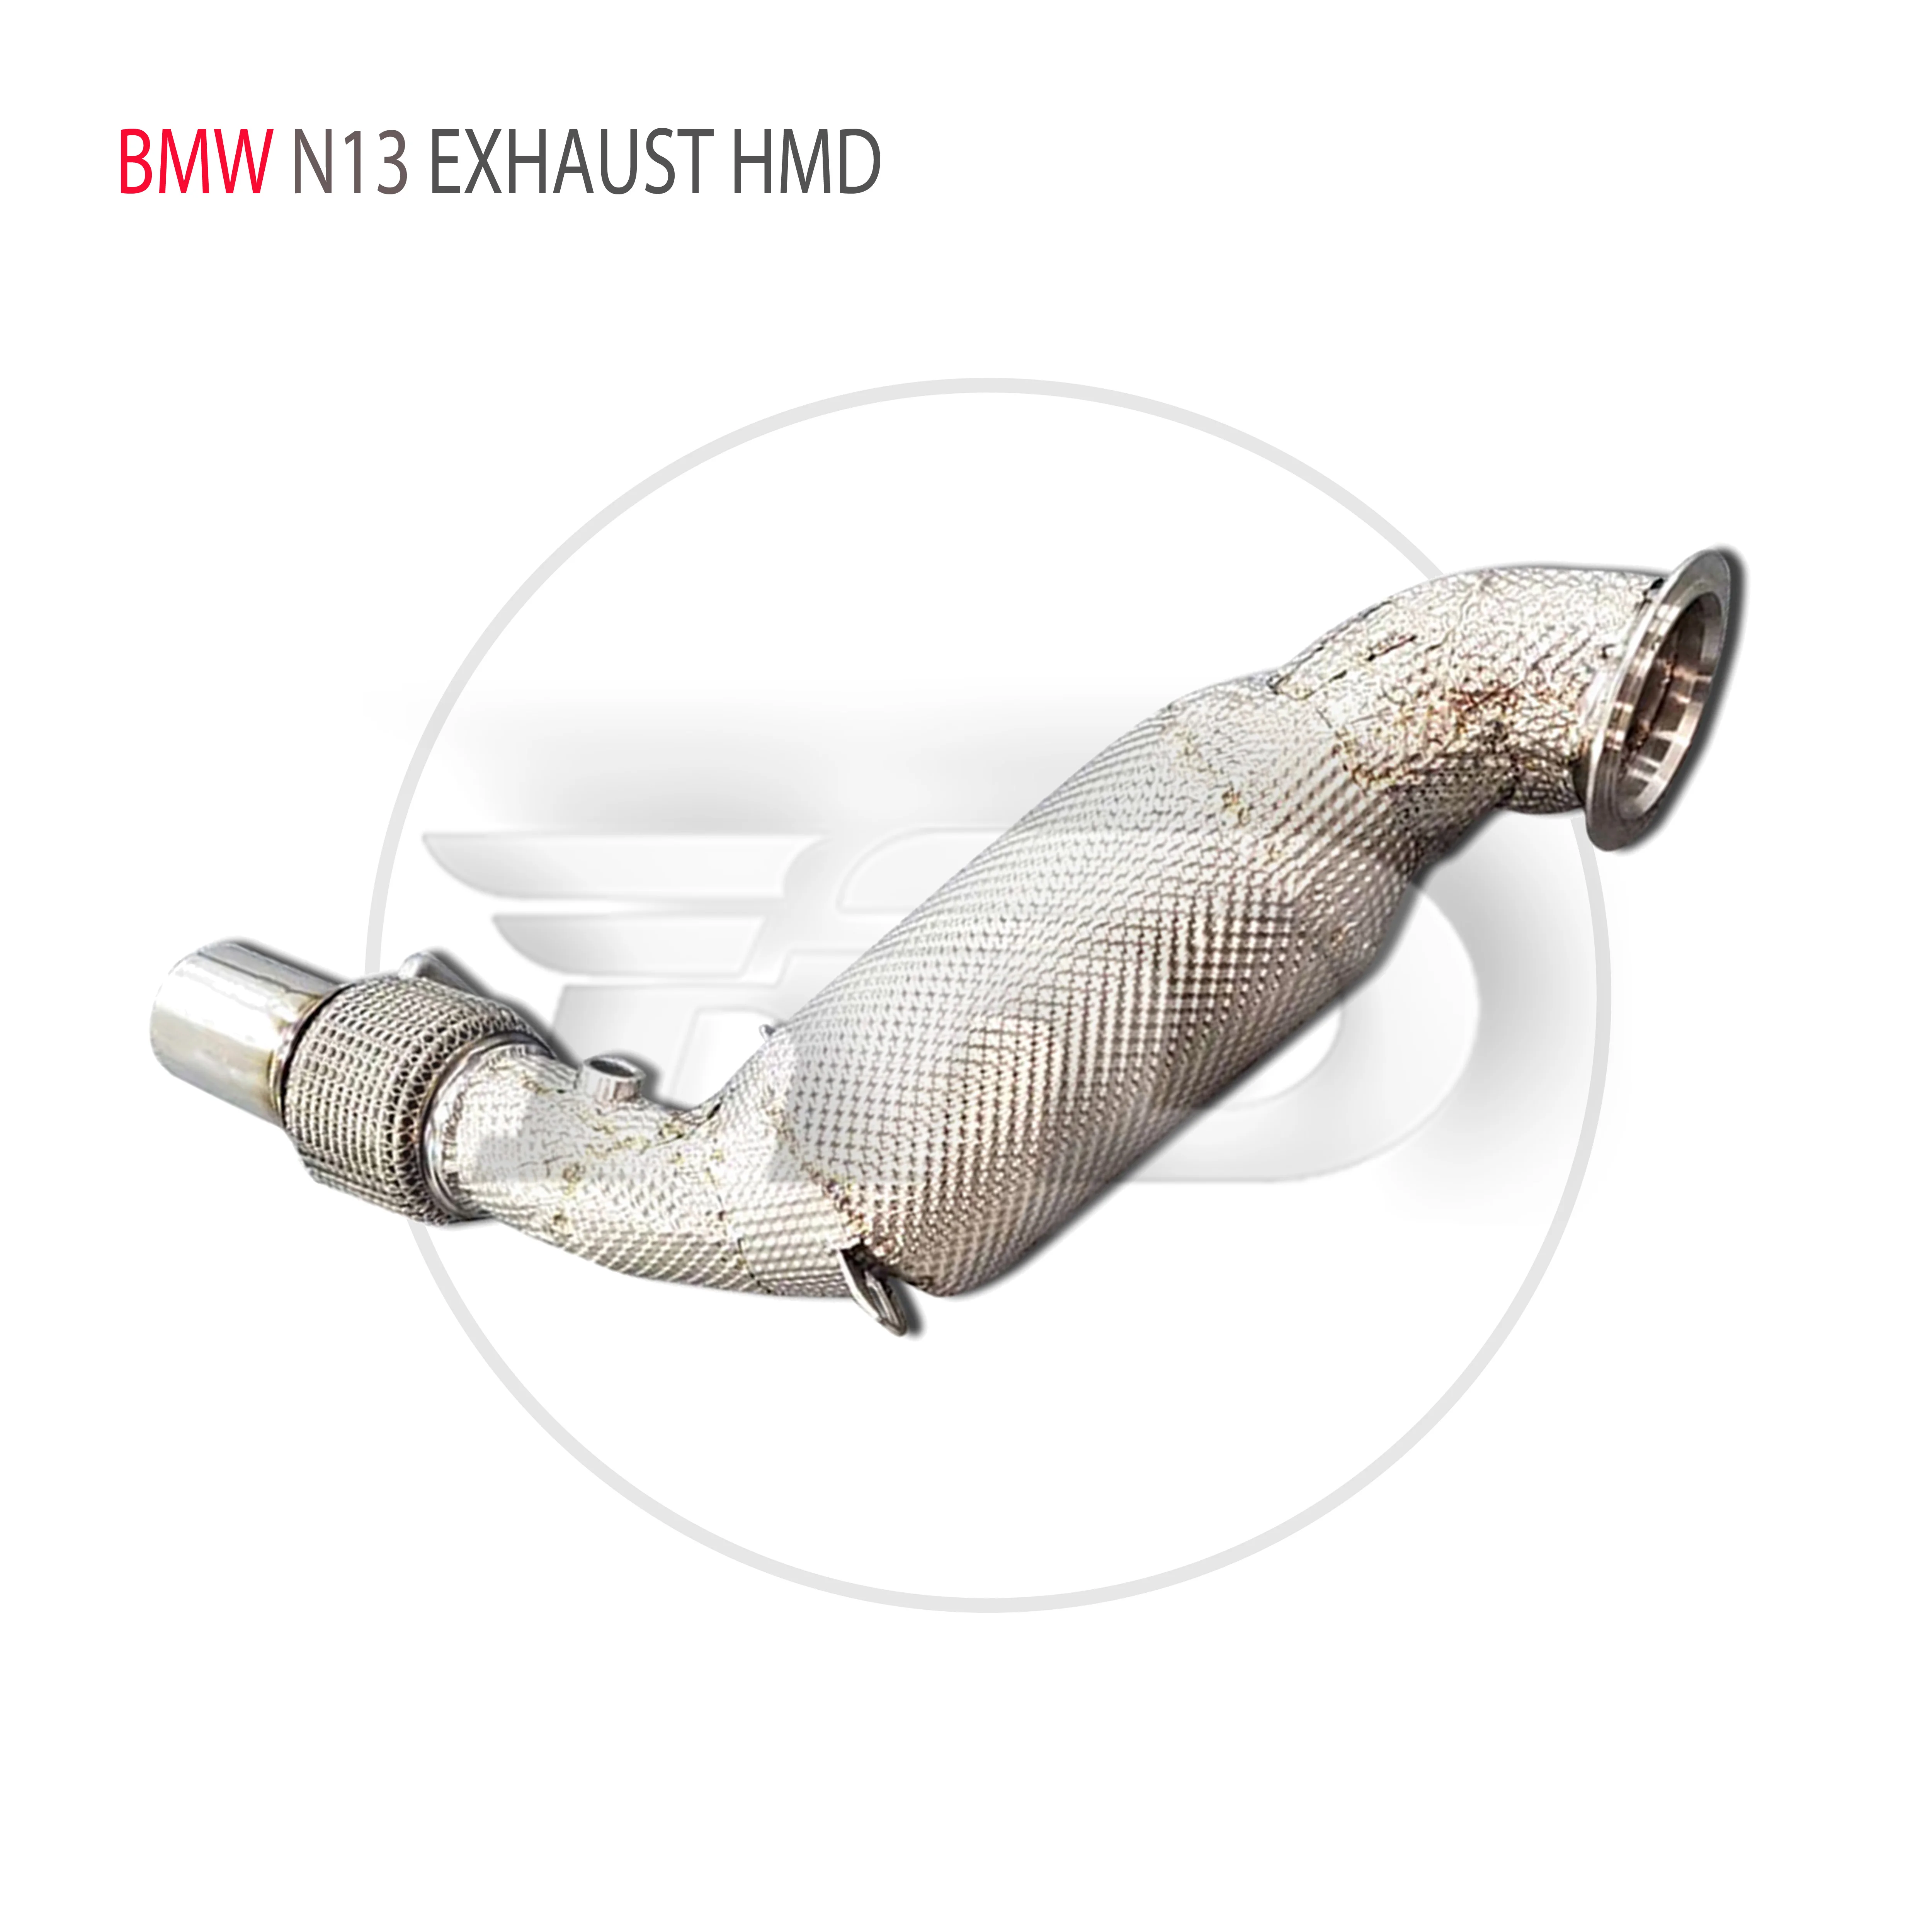 

HMD выхлопная система из нержавеющей стали, высокая производительность потока, водосточная труба для BMW 116i 118i 120i N13 1,6 T, автомобильные аксессуары